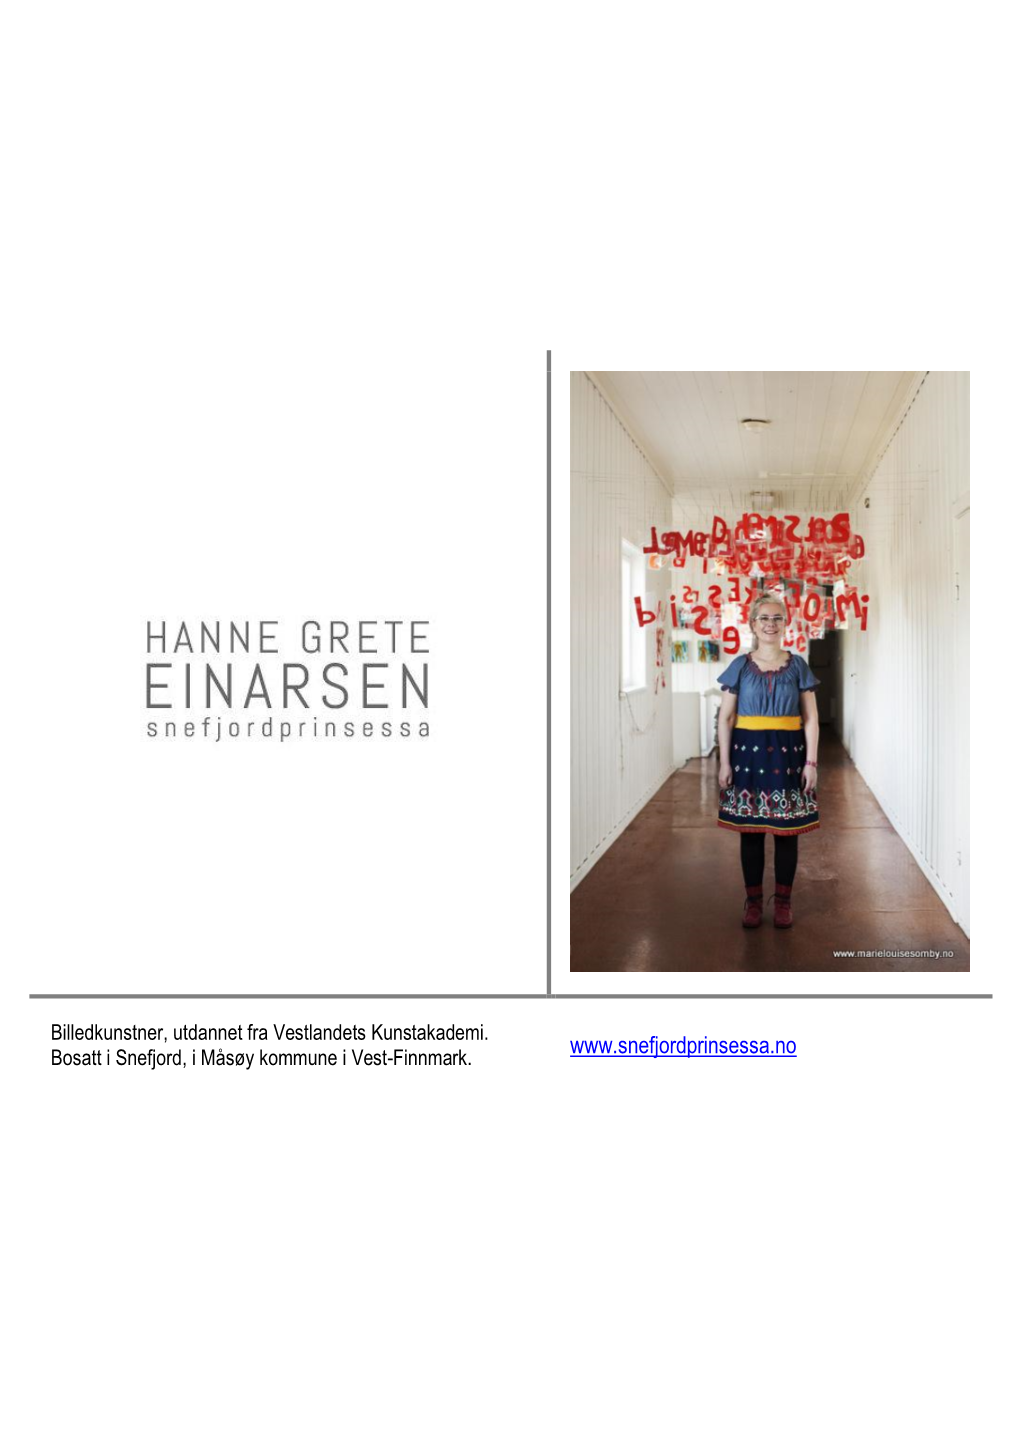 Hanne Grete Einarsen